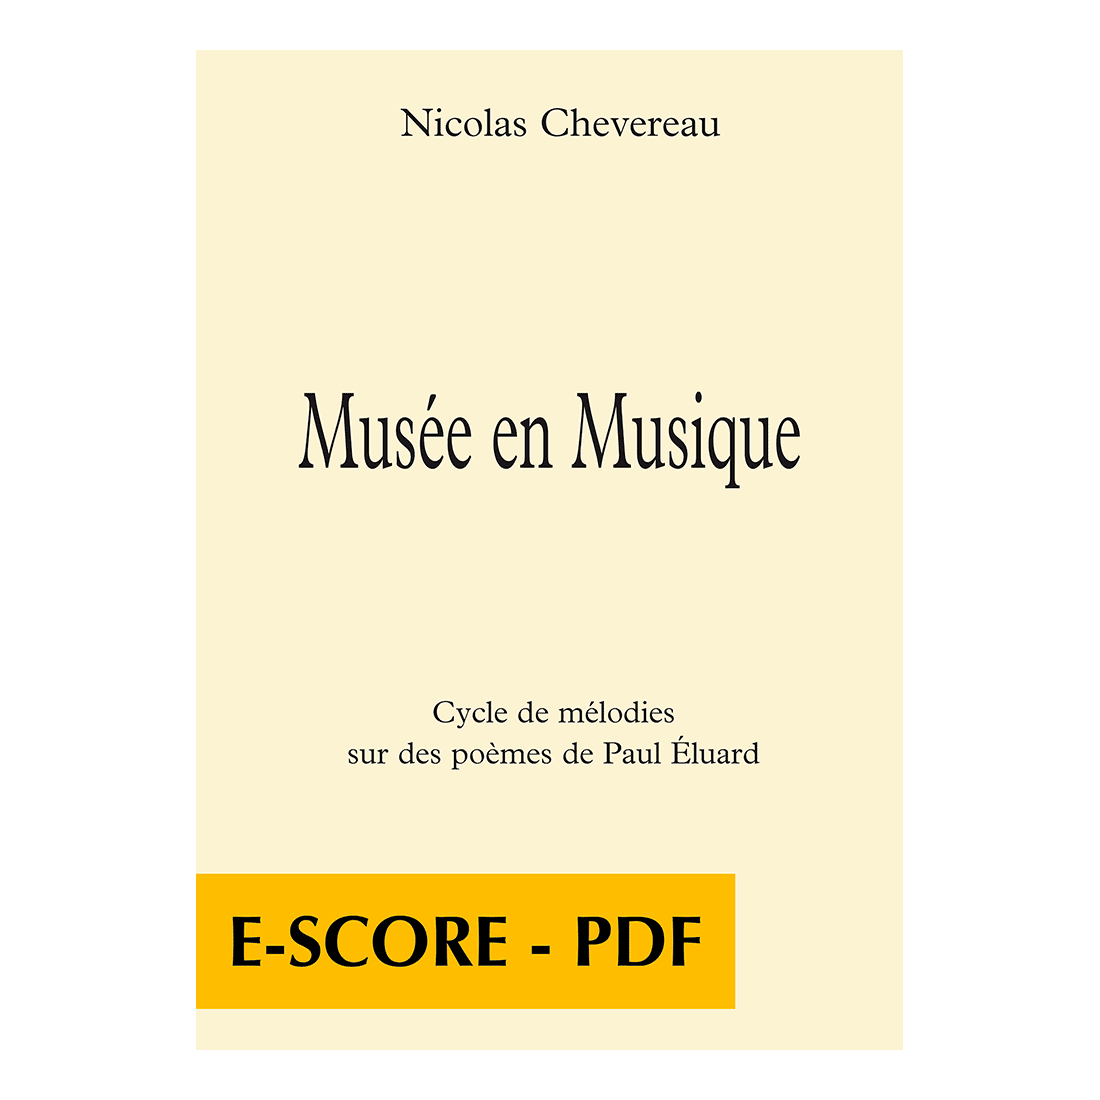 Musée en musique - Cycle de mélodies sur des poèmes de Paul Eluard für Gesang und Klavier - E-score PDF